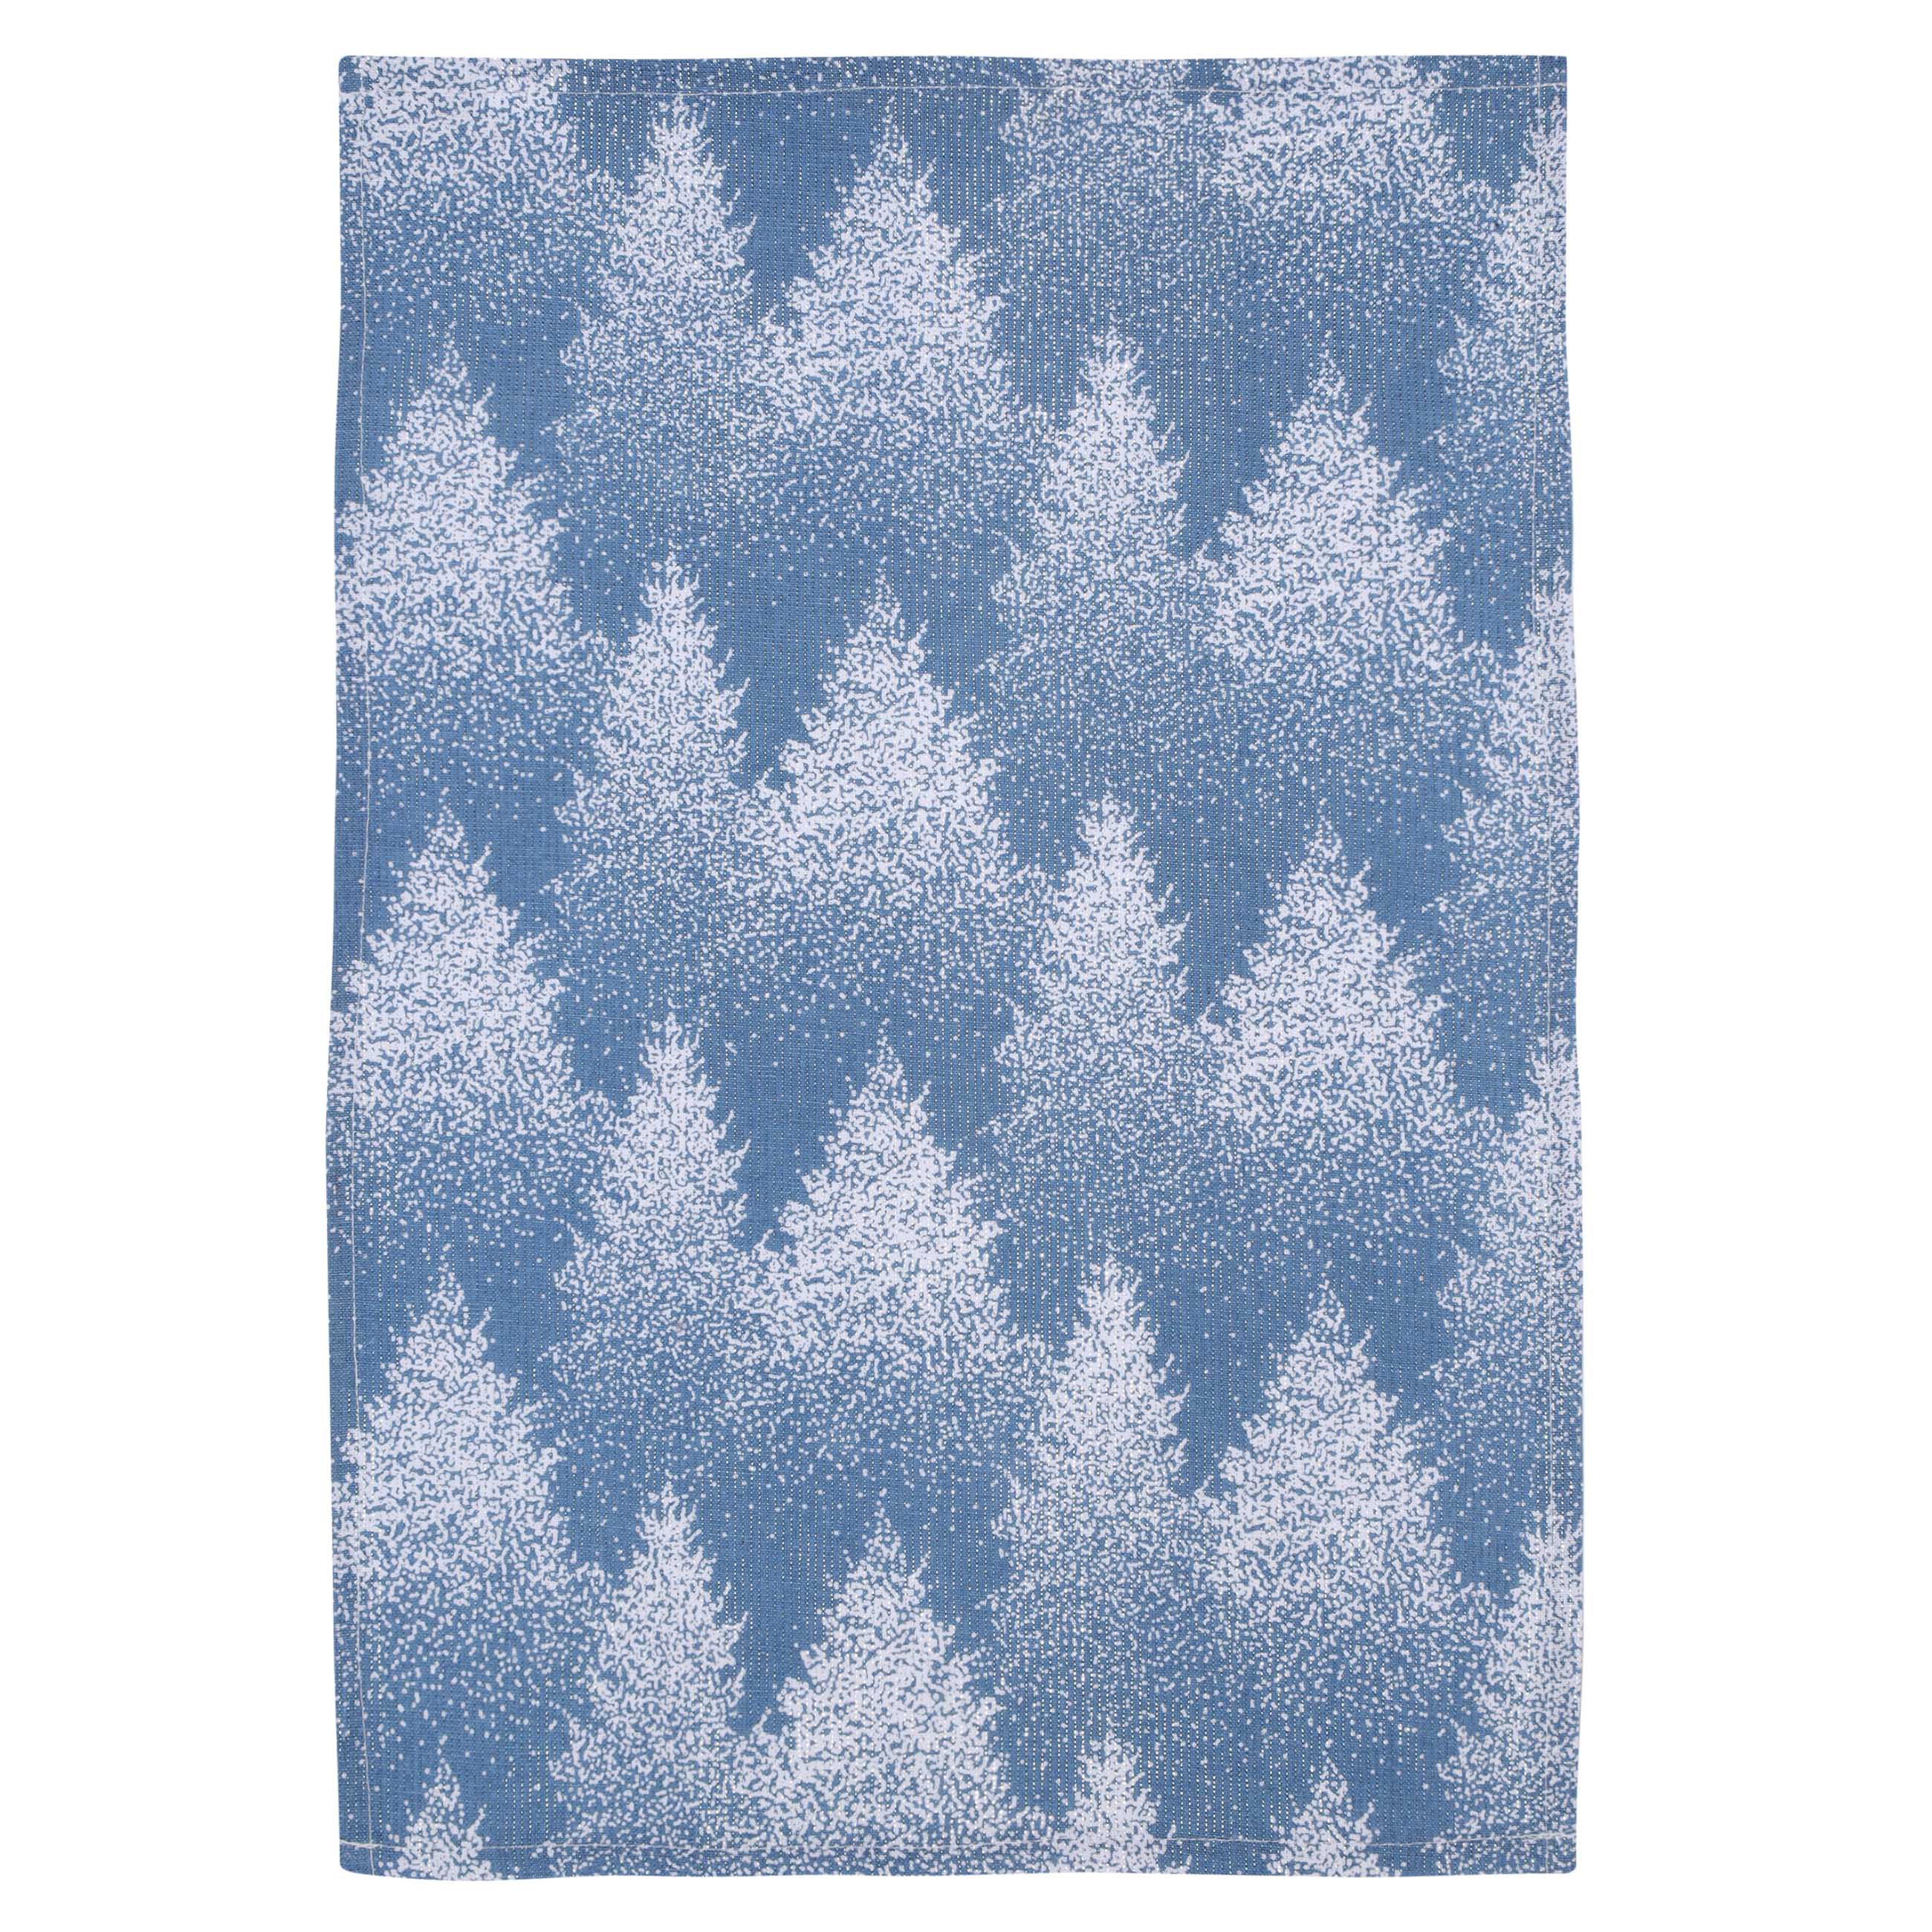 Полотенце кухонное, 40х60 см, 2 шт, хлопок, голубое/белое, Снежные ели, Snowy fir изображение № 2